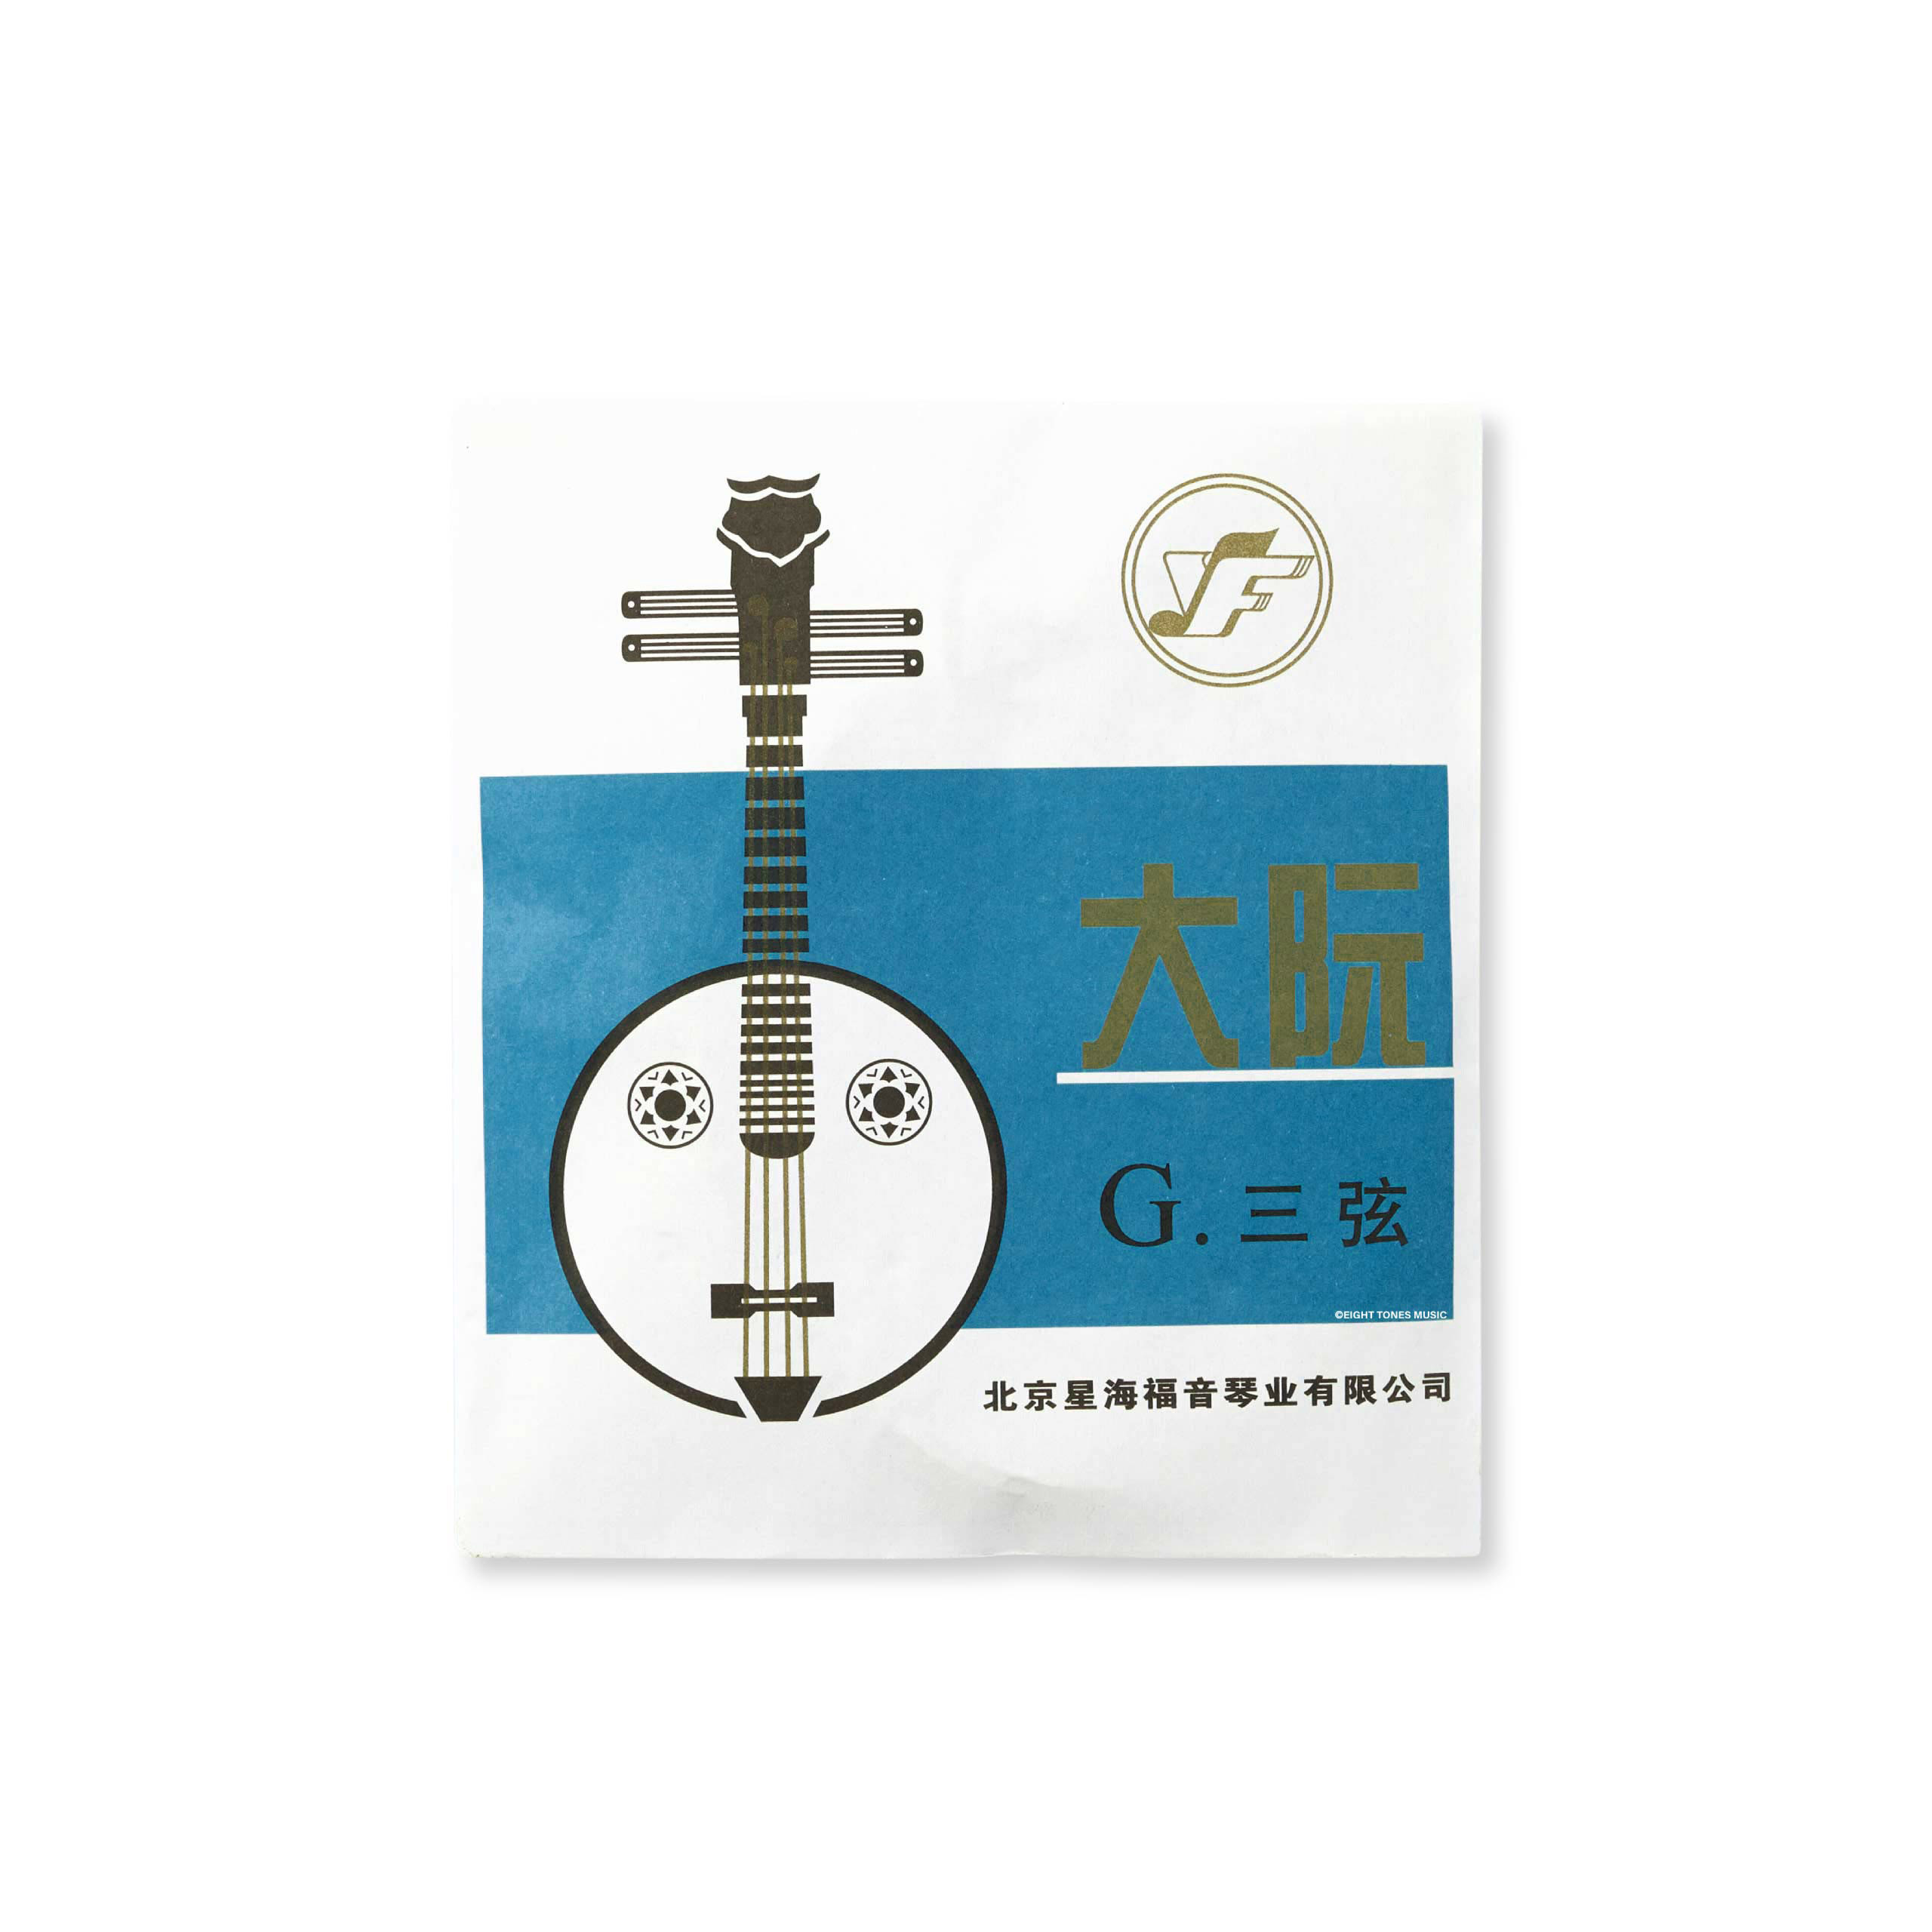 Xing Hai Daruan Strings 3